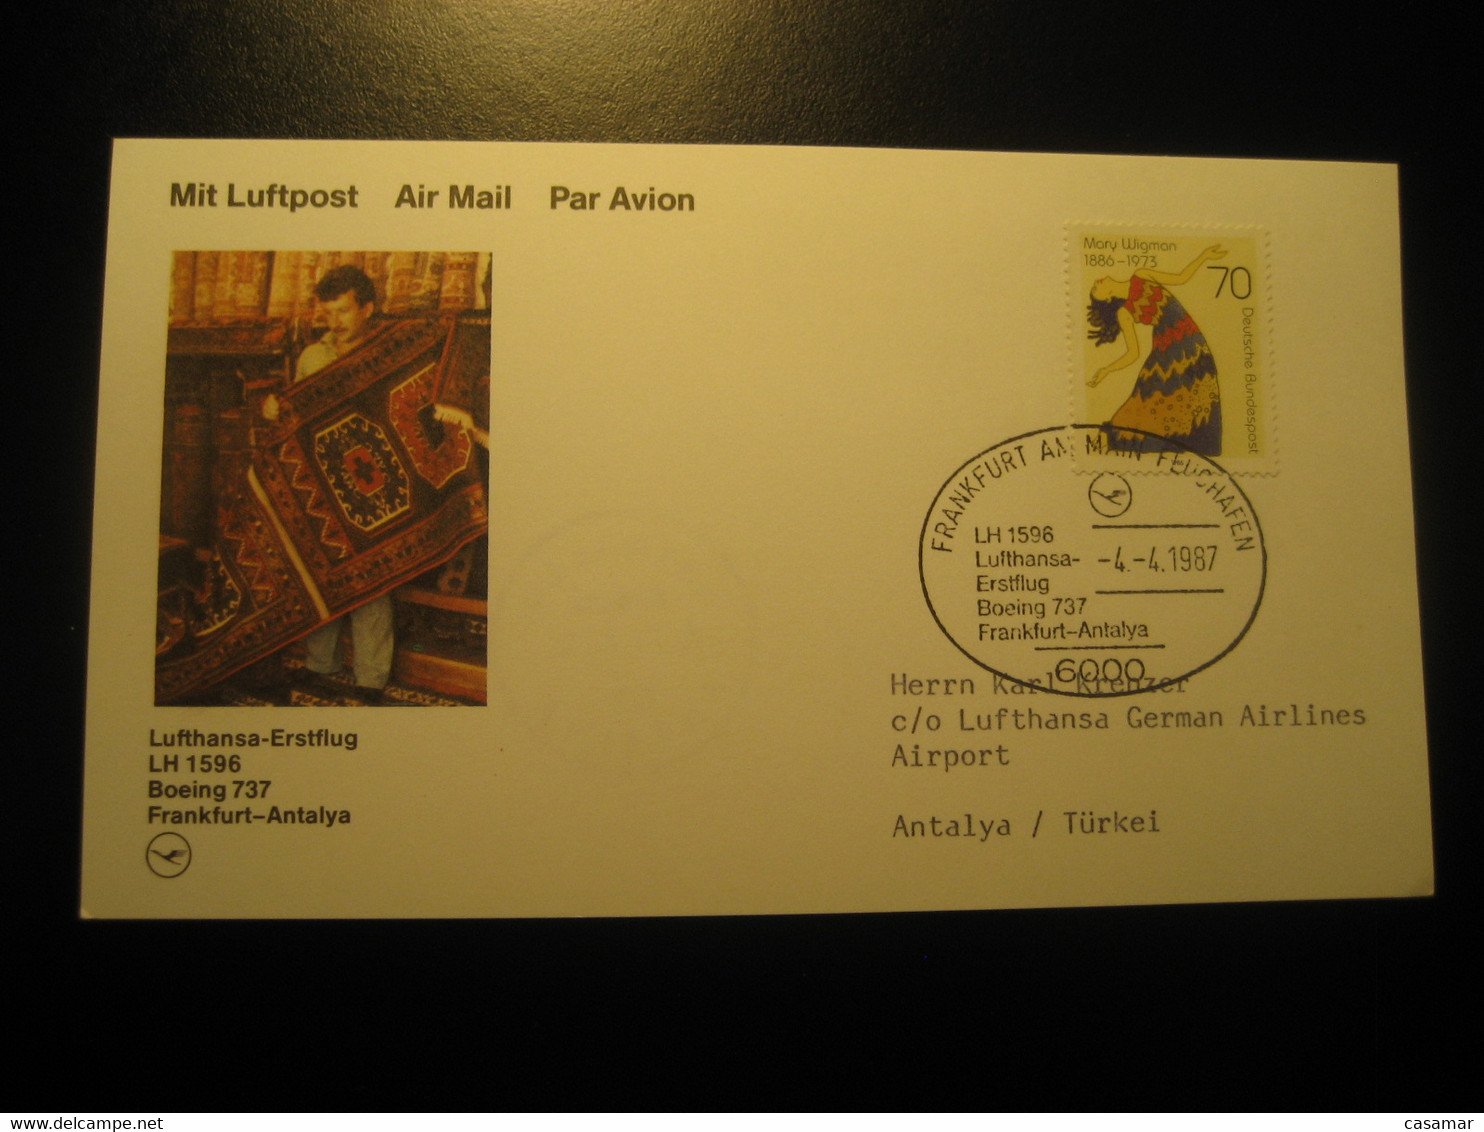 Frankfurt Antalya 1987 Lufthansa Airline Boeing 737 First Flight Stamp Cancel Card Turkey Germany - Poste Aérienne